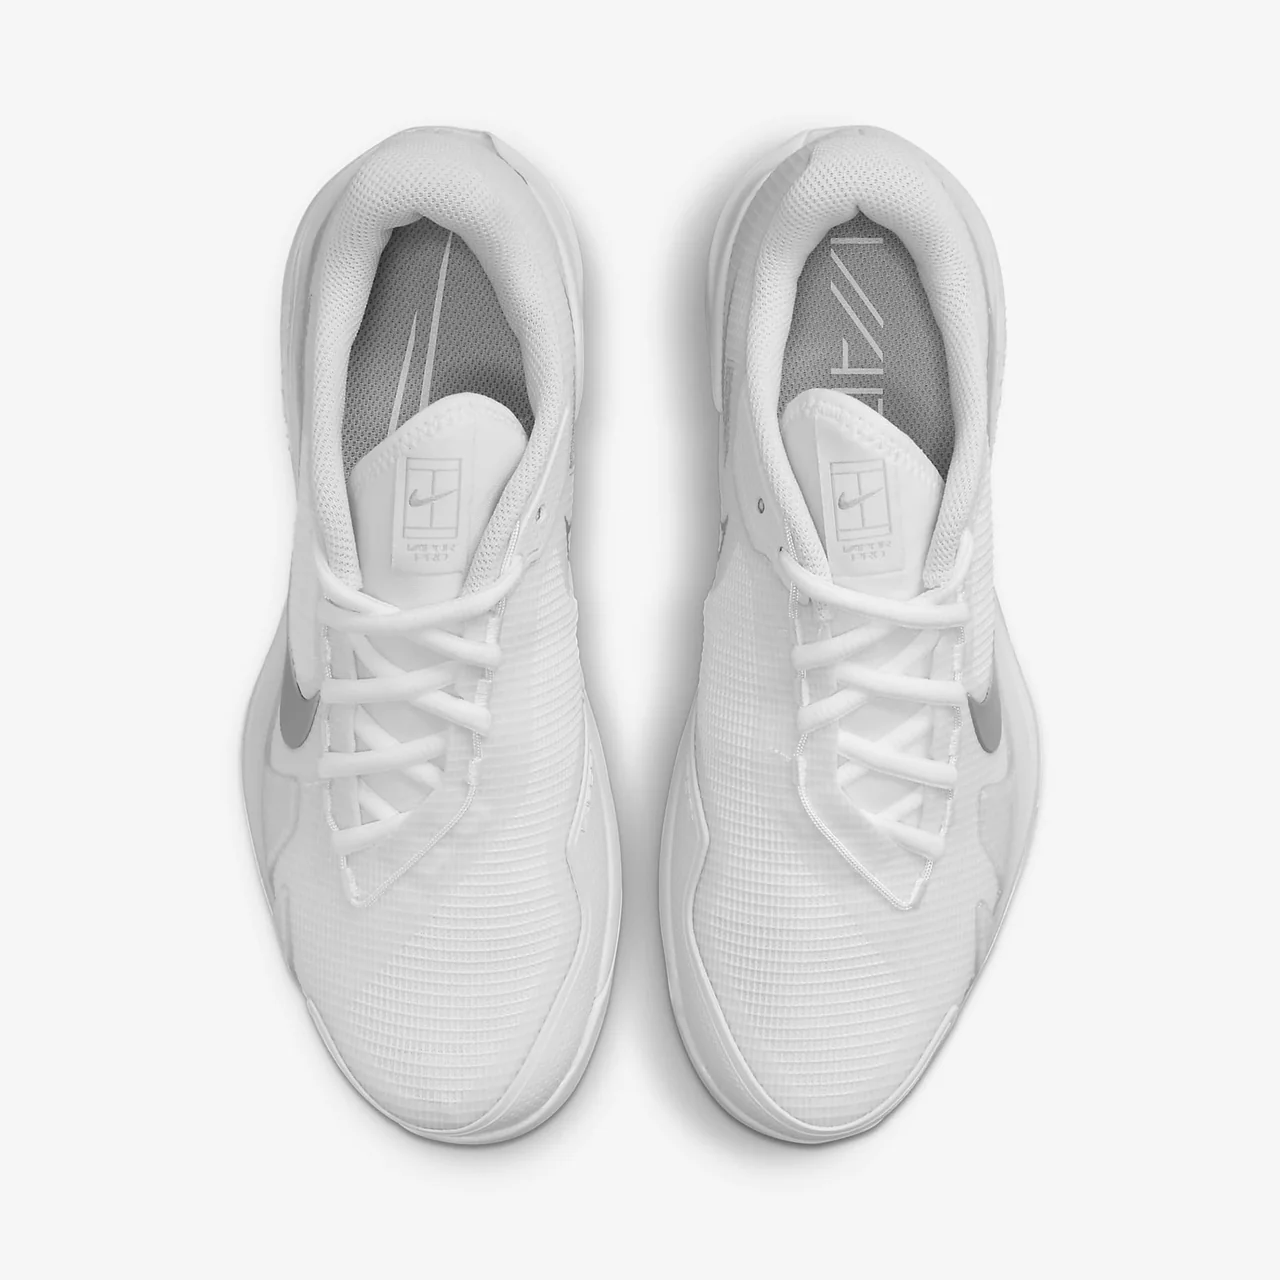 Nike Vapor Pro Women White/Silver